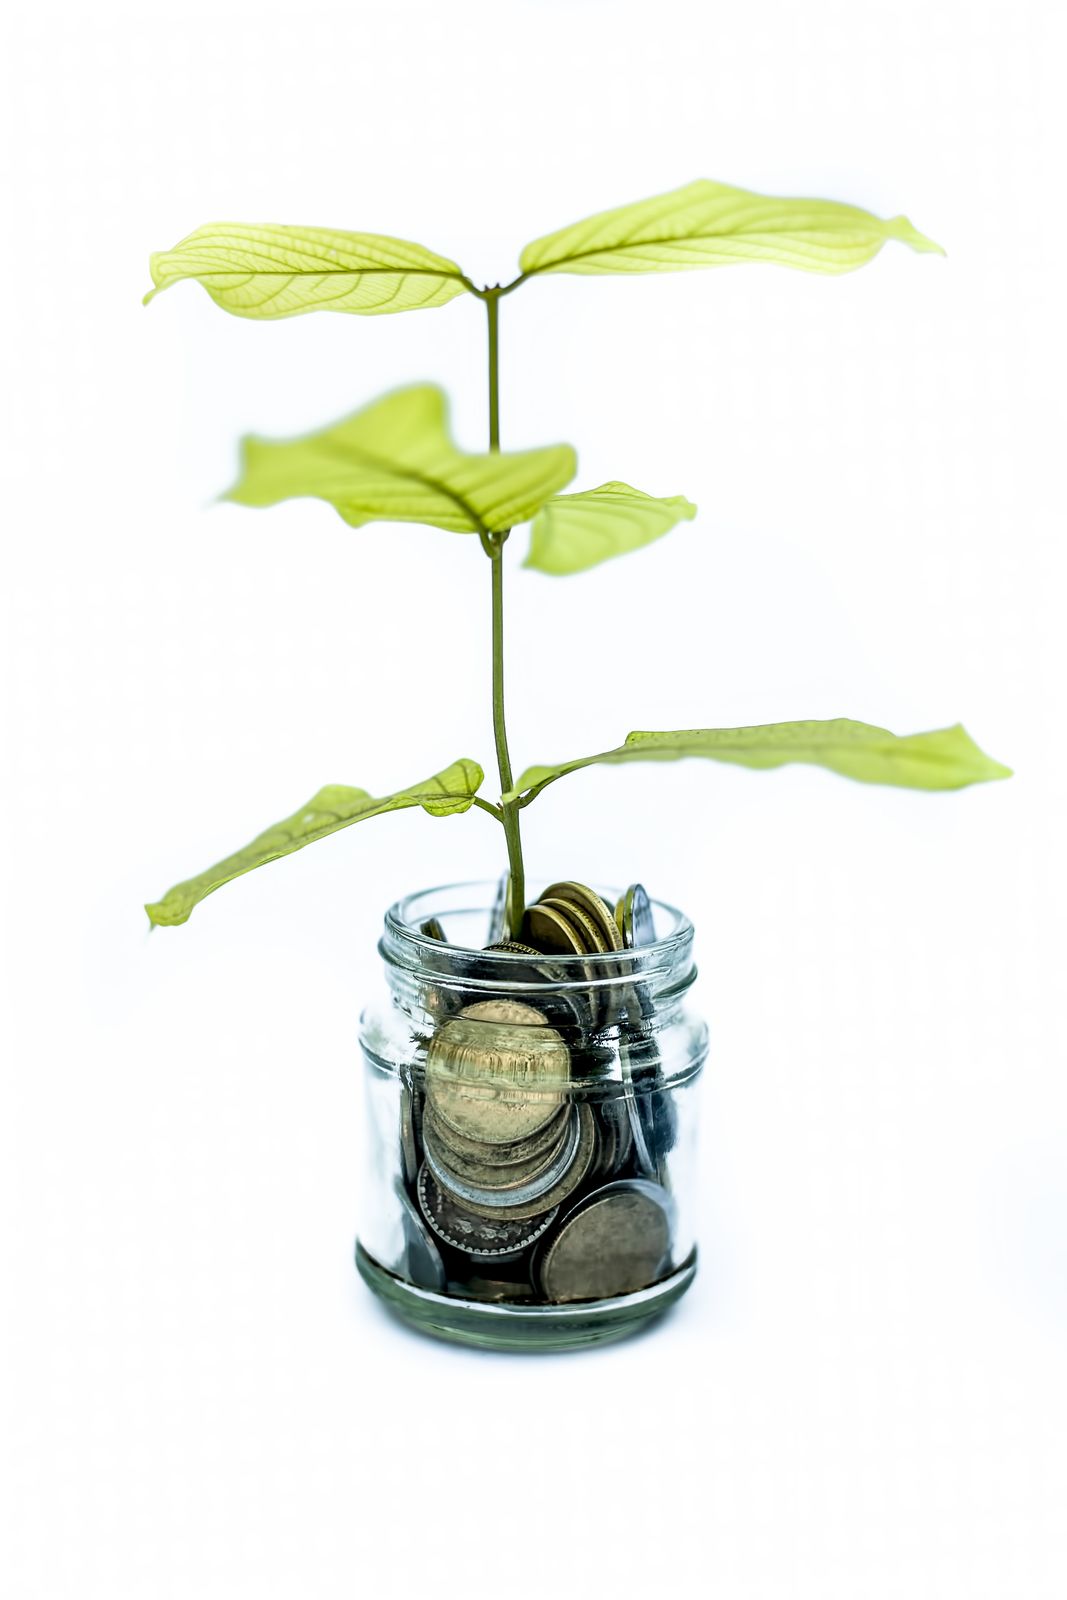 Eine relativ kleine Pflanze wächst symbolisch zur Verdeutlichung von sparsamen Geldwachstum aus einem Einmachglas mit Geldmünzen